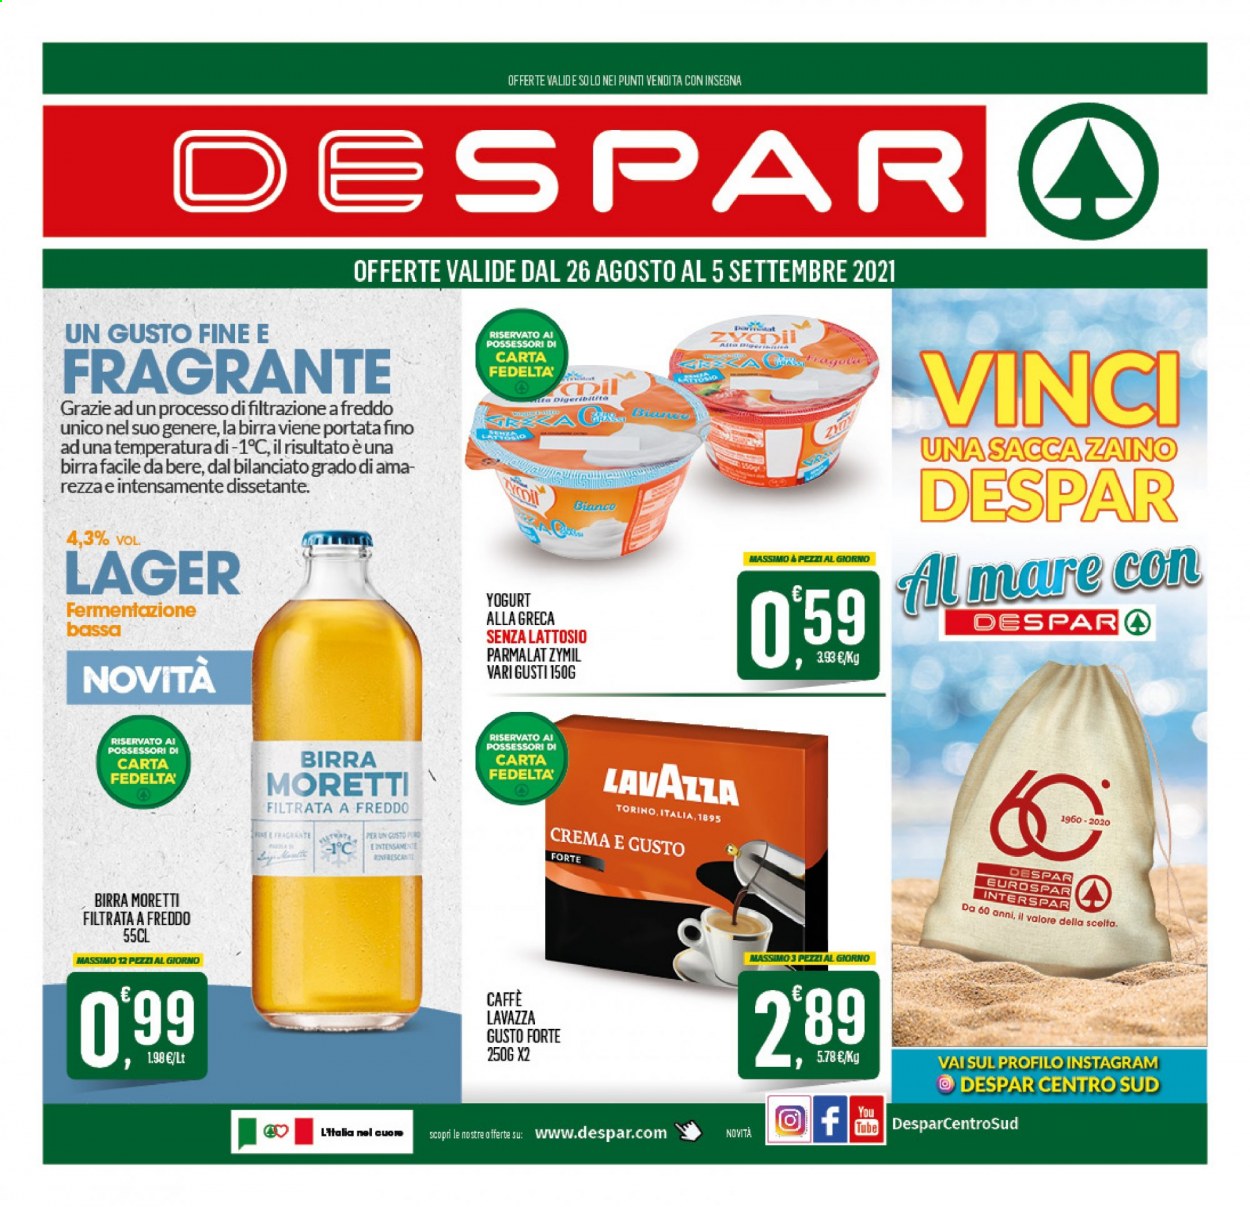 thumbnail - Volantino Despar - 26/8/2021 - 5/9/2021 - Prodotti in offerta - Birra Moretti, birra tipo lager, birra filtrata a freddo, Parmalat, Zymil, caffè, Lavazza, sacca, zaino. Pagina 1.